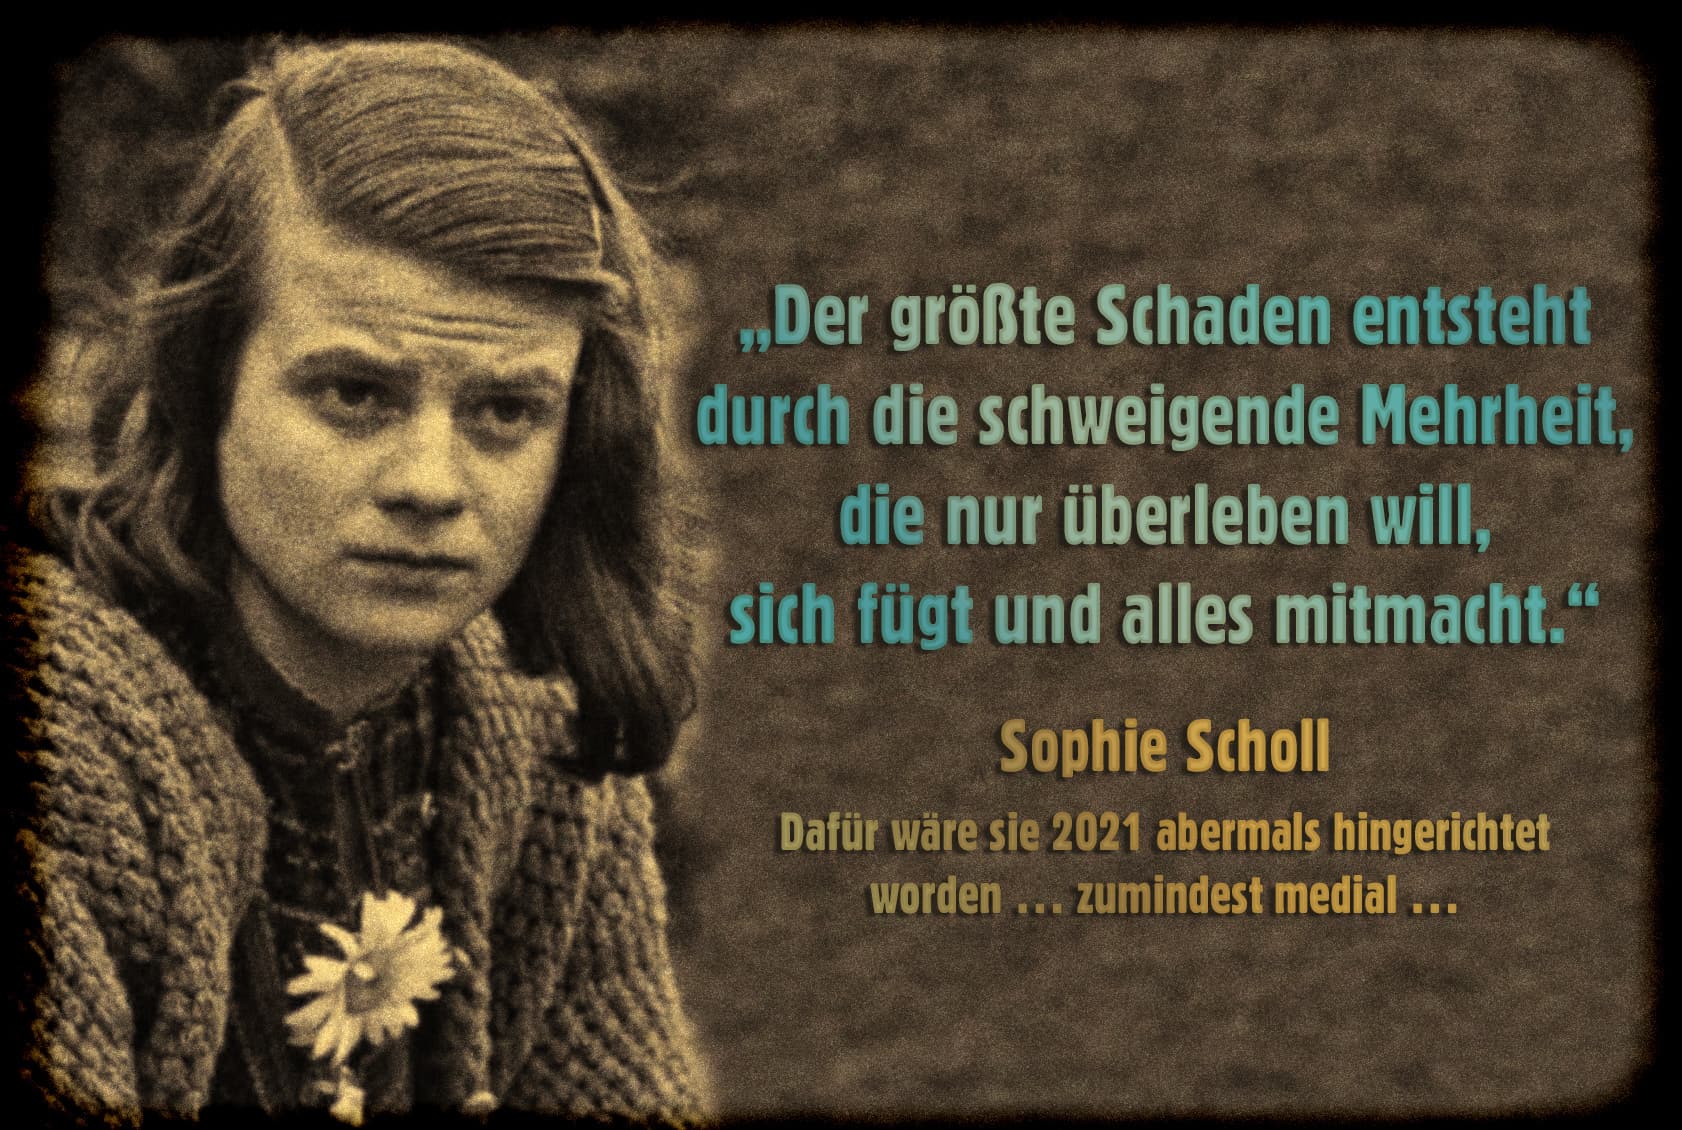 Sophie Scholl die schweigende Mehrheit qpress